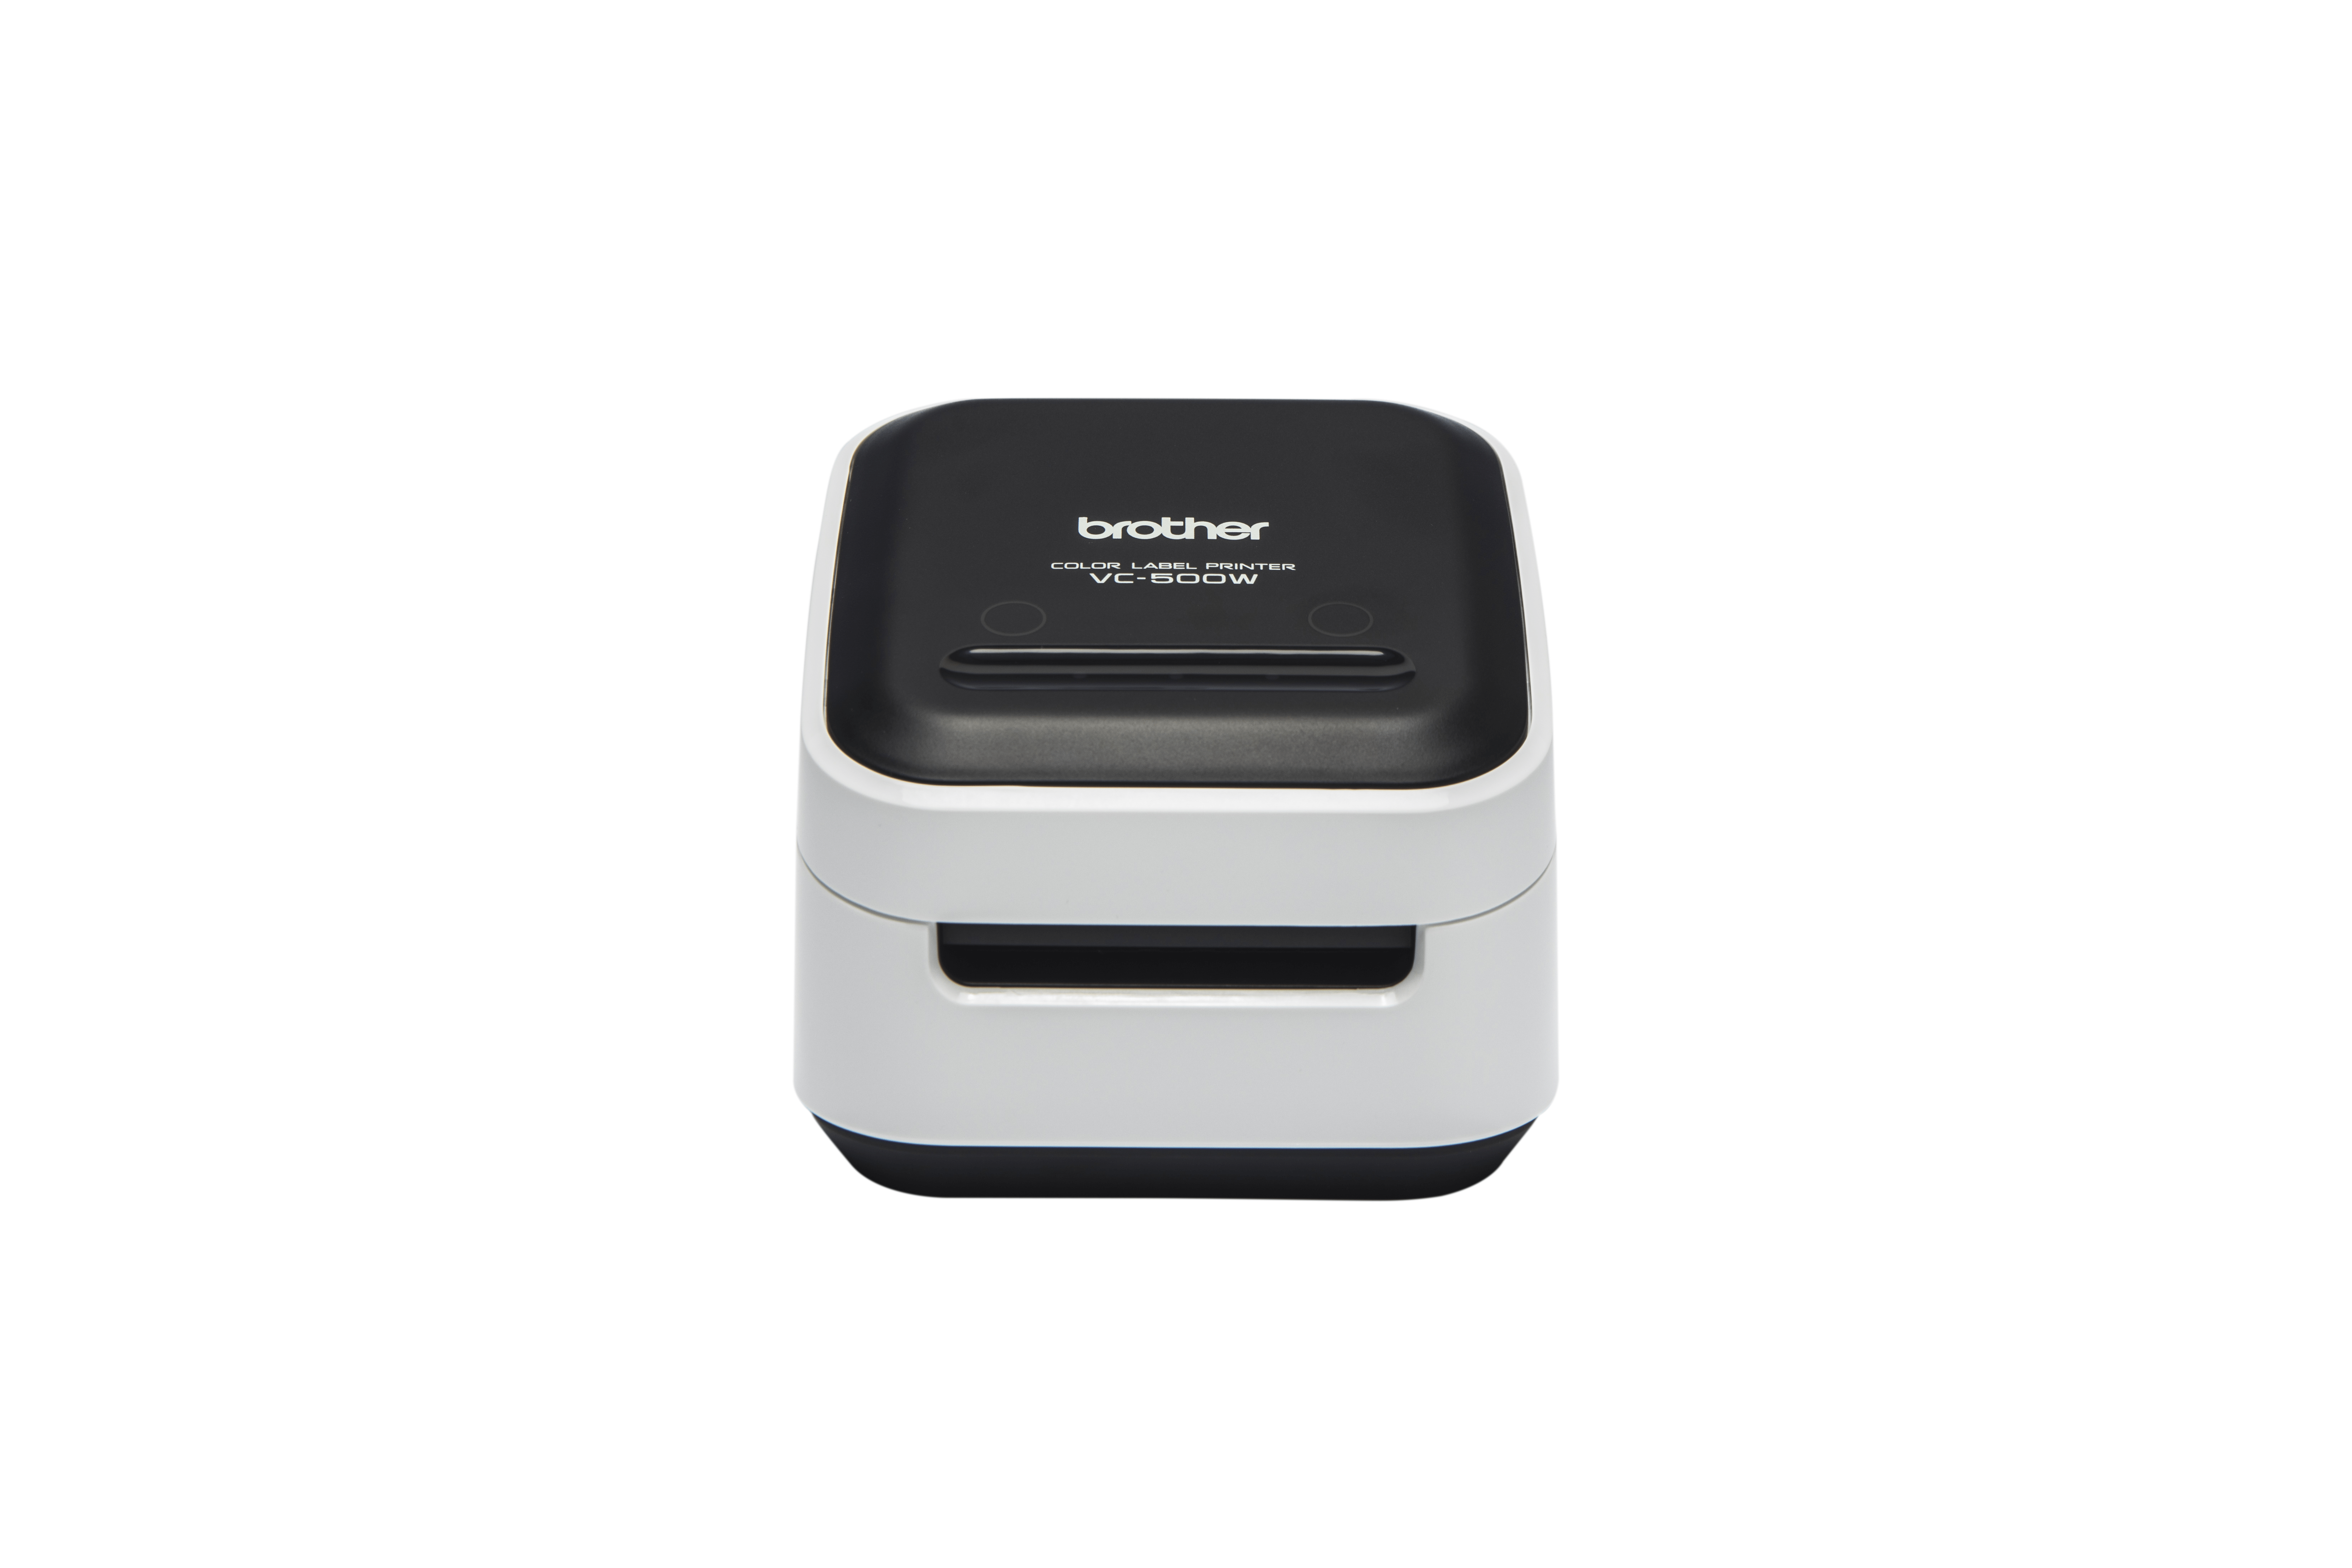 VC-500W štampač nalepnica  u boji